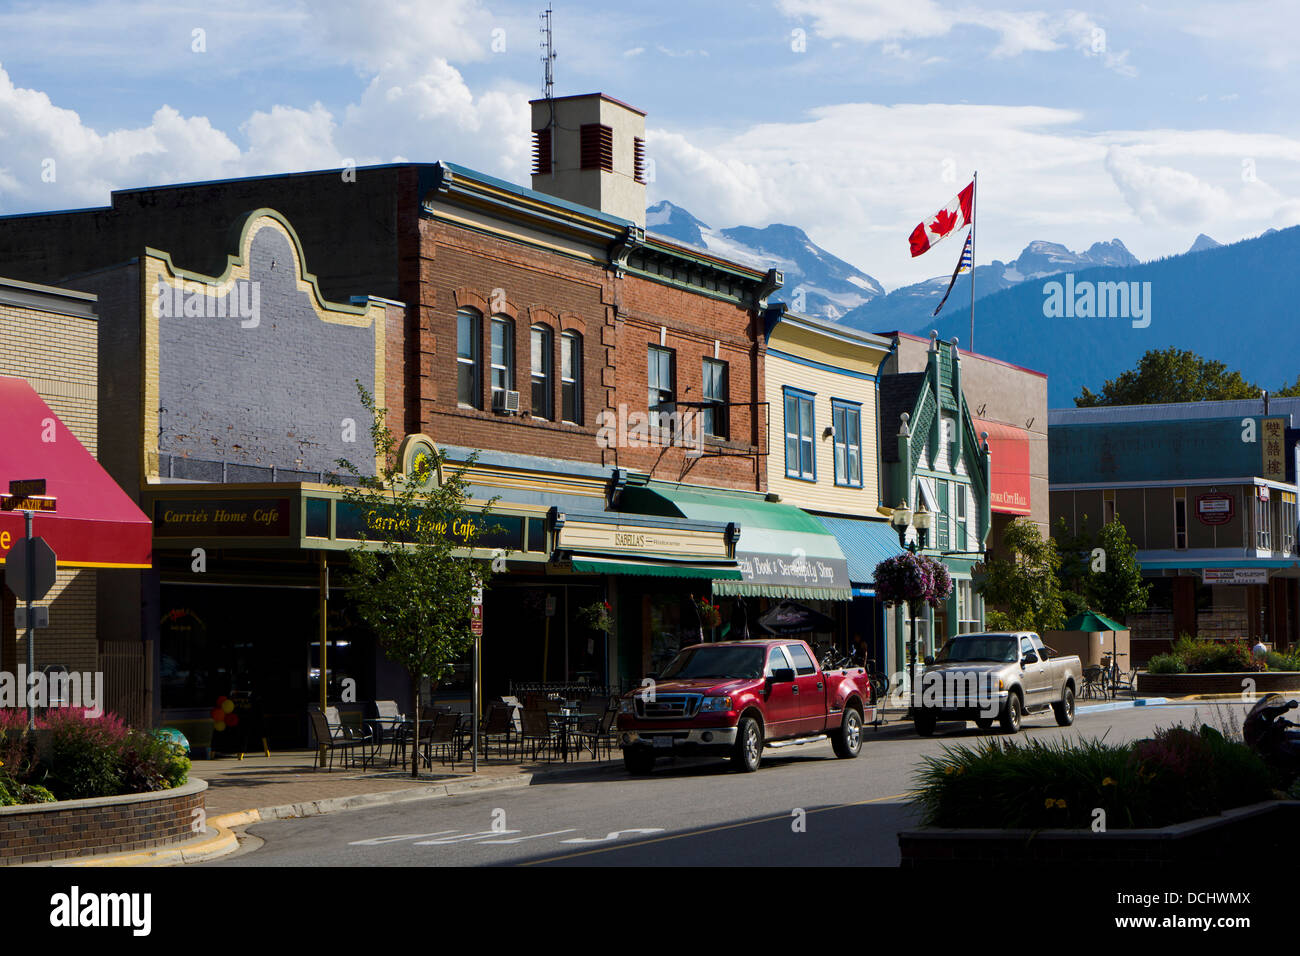 MacKenzie Ave, downtown Revelstoke, British Columbia, Canada Stock Photo